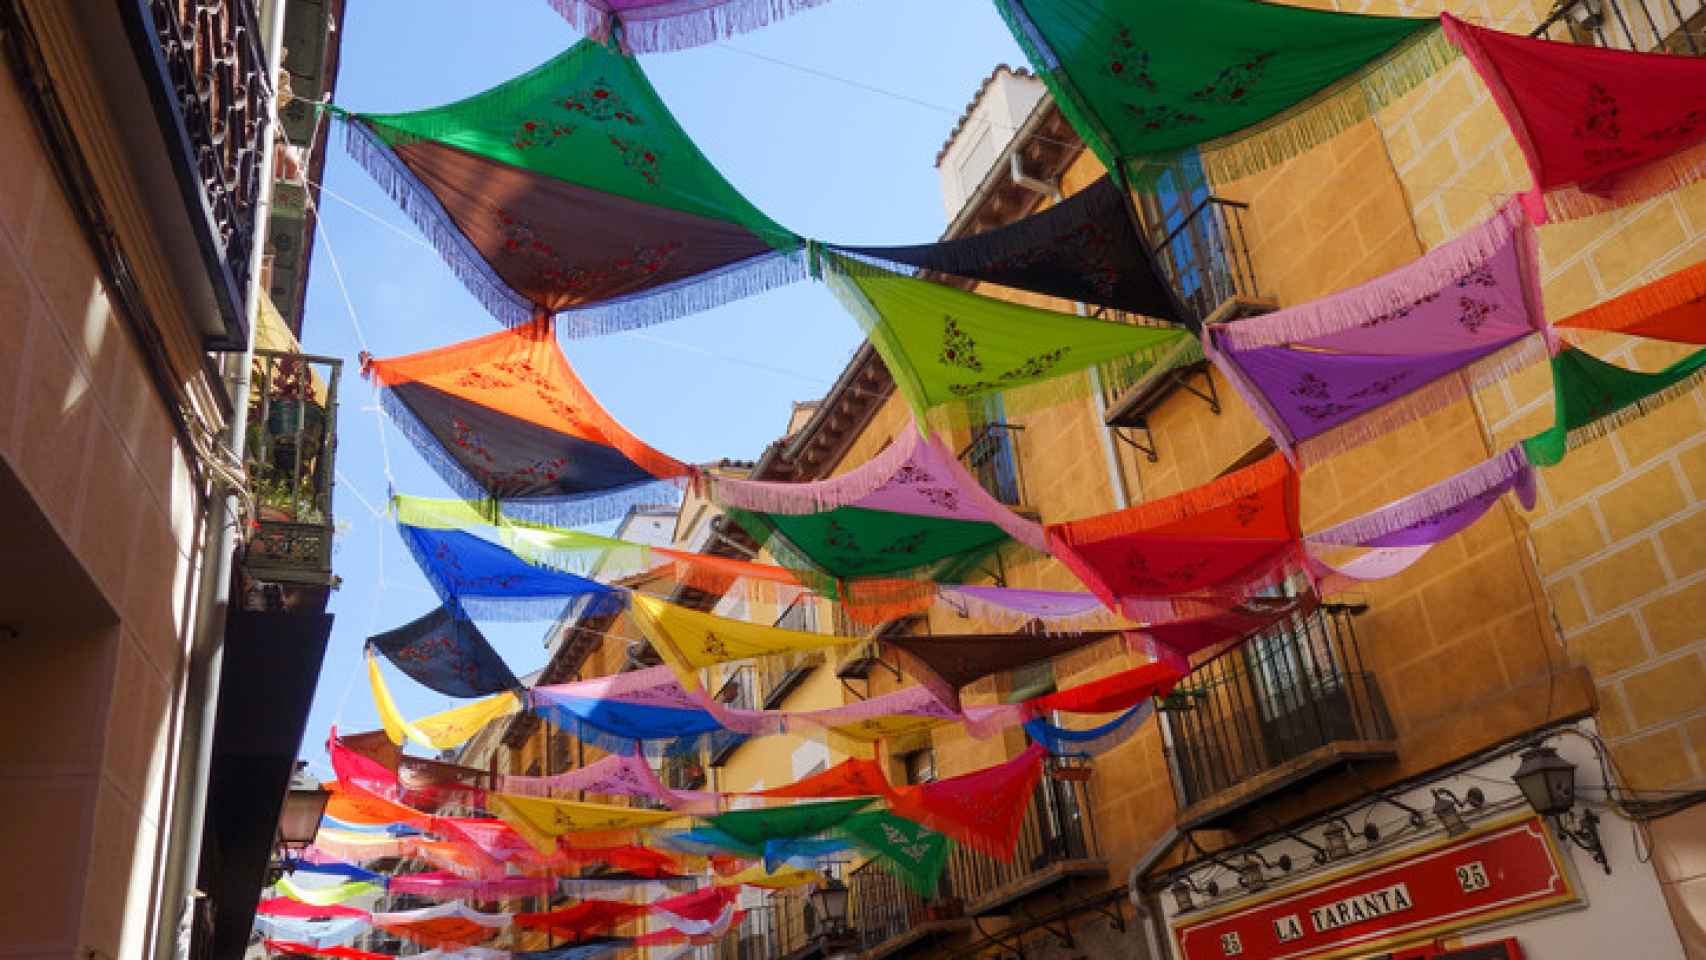 Las calles de Lavapiés y el centro de Madrid decoradas con mantones de Manila para las fiestas de San Cayetano con el concierto de Ana Guerra gratis.